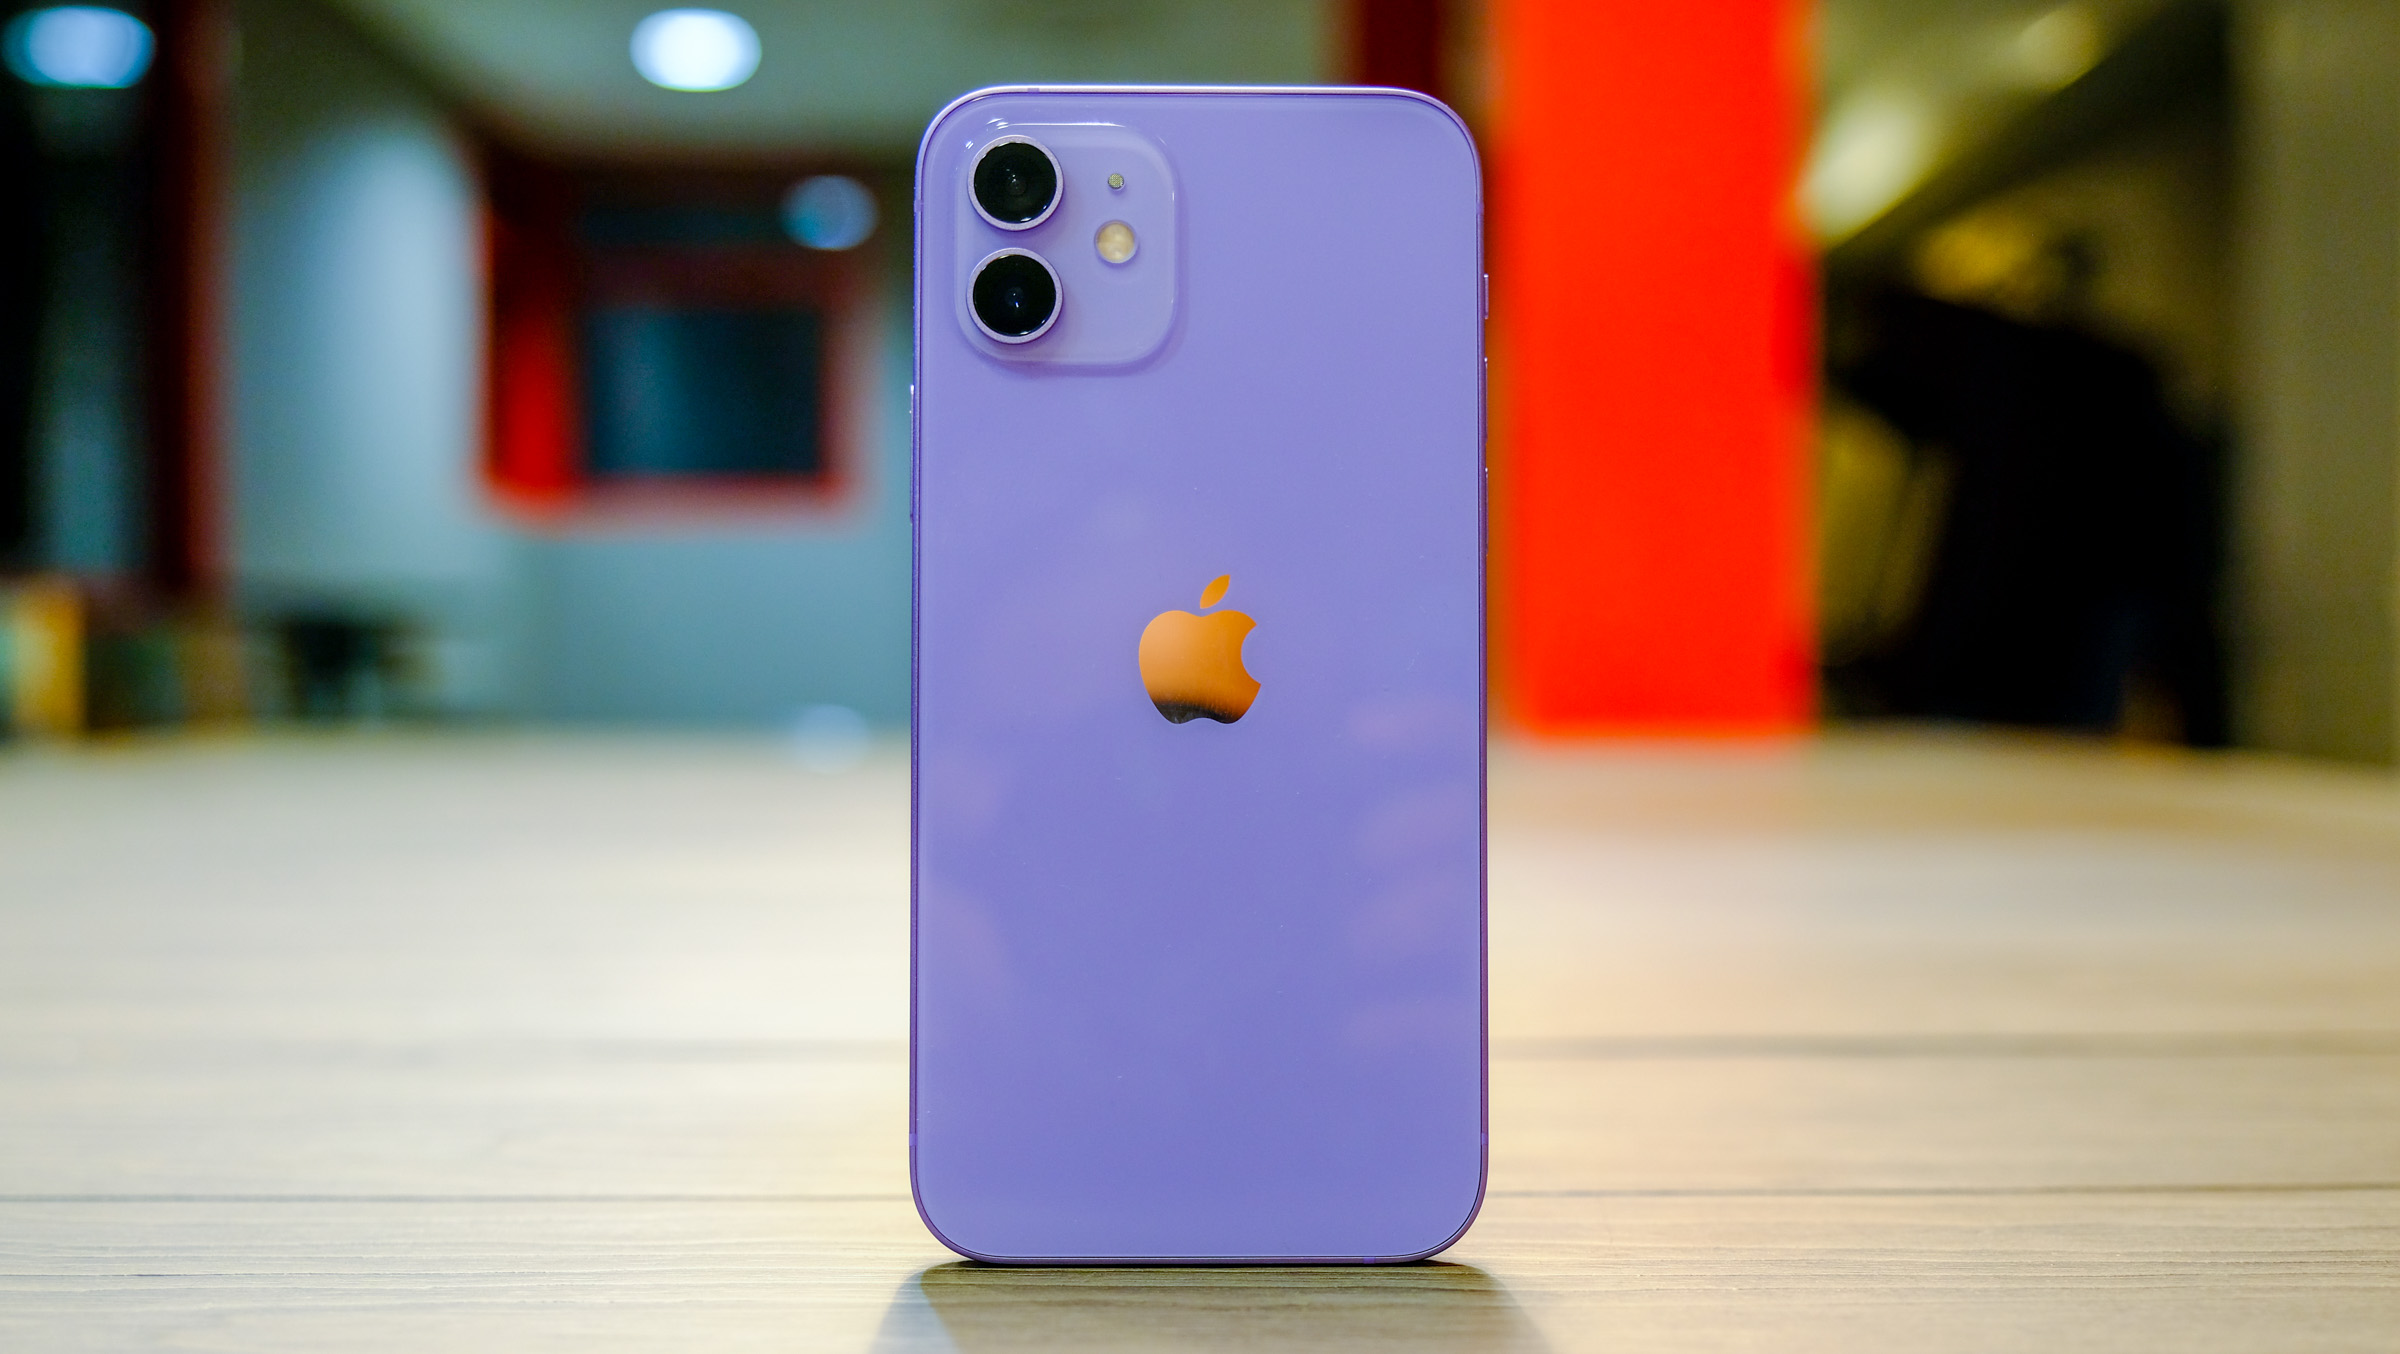 來看看紫色 iPhone 12 的真機